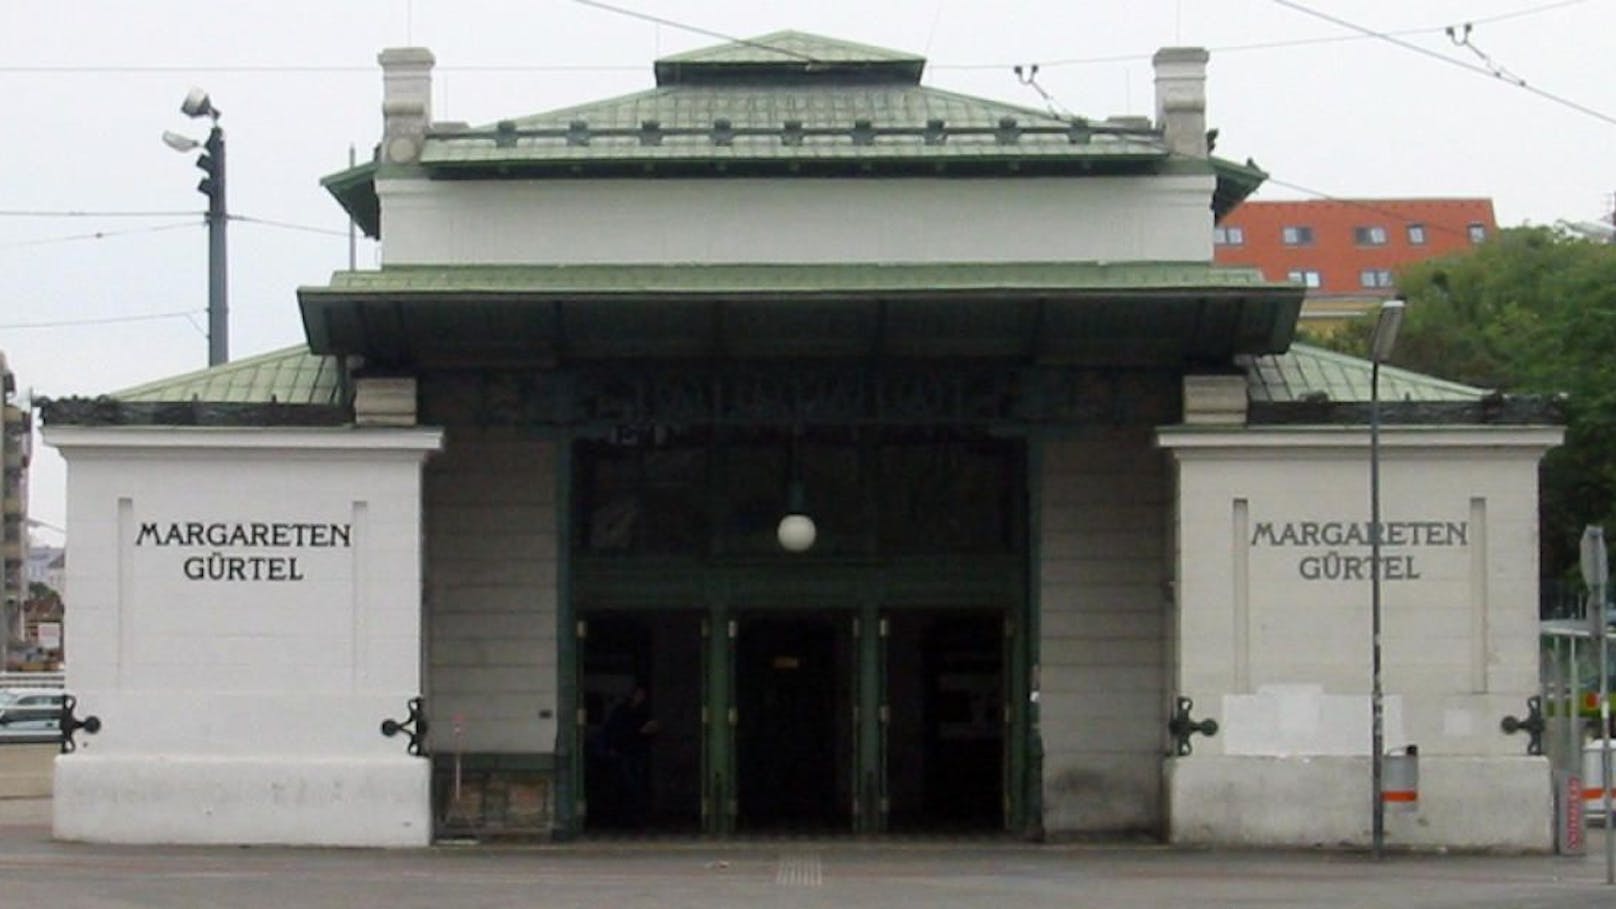 Die Wiener FPÖ bezeichnet die U4-Station Margaretengürtel als "Drogen-Hotspot" und fordert Überwachungskameras.